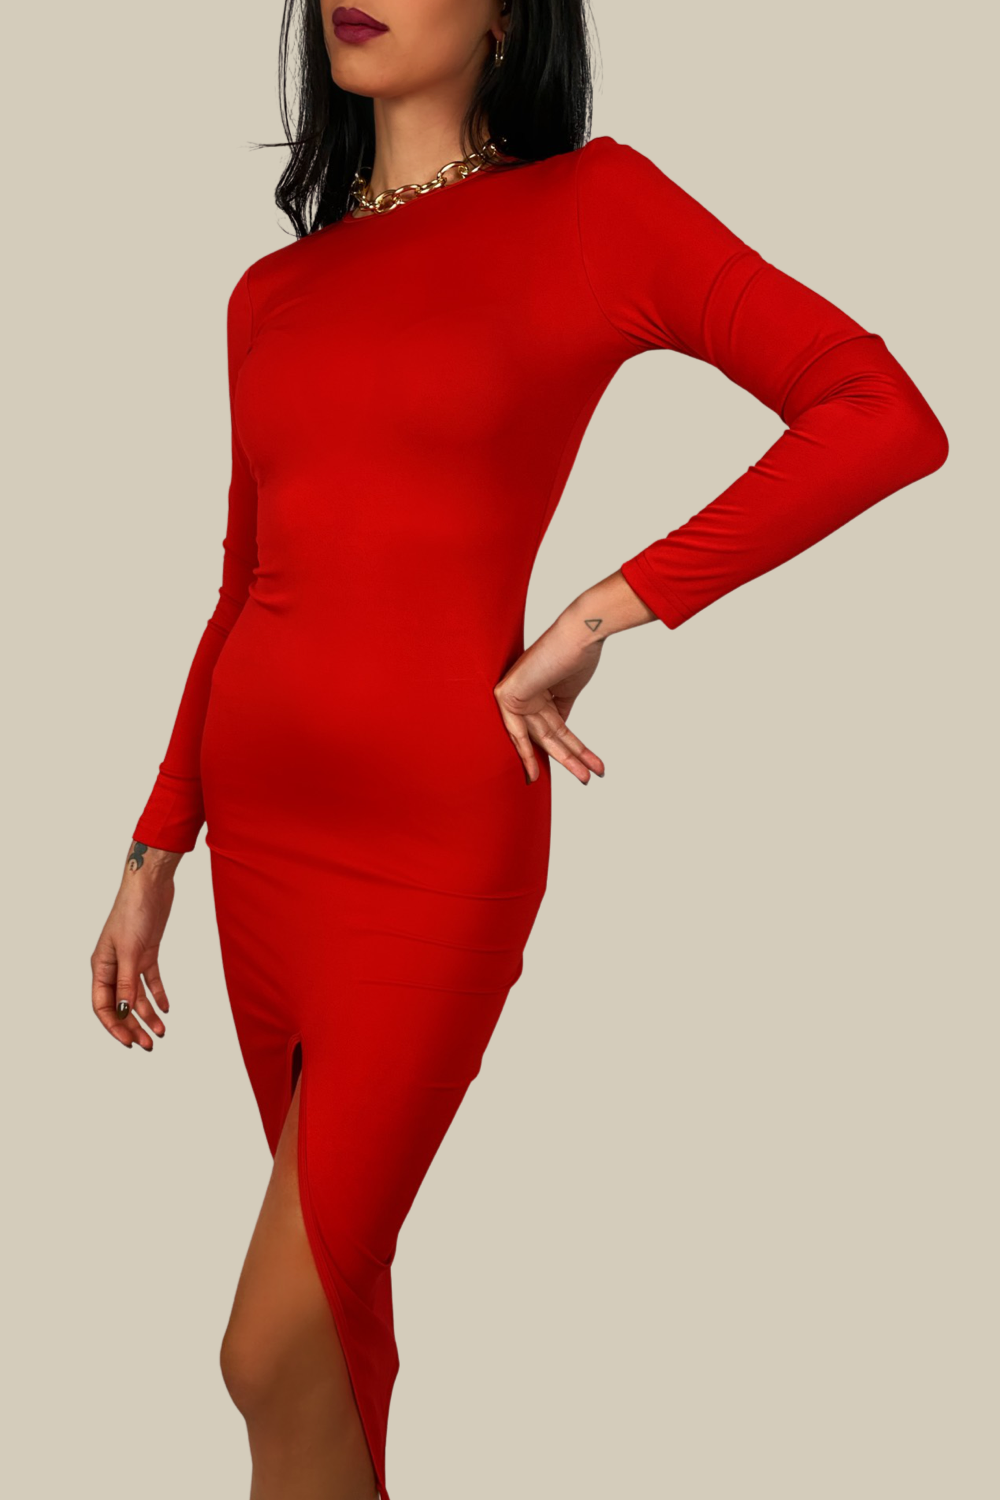 KORINA RED DRESS